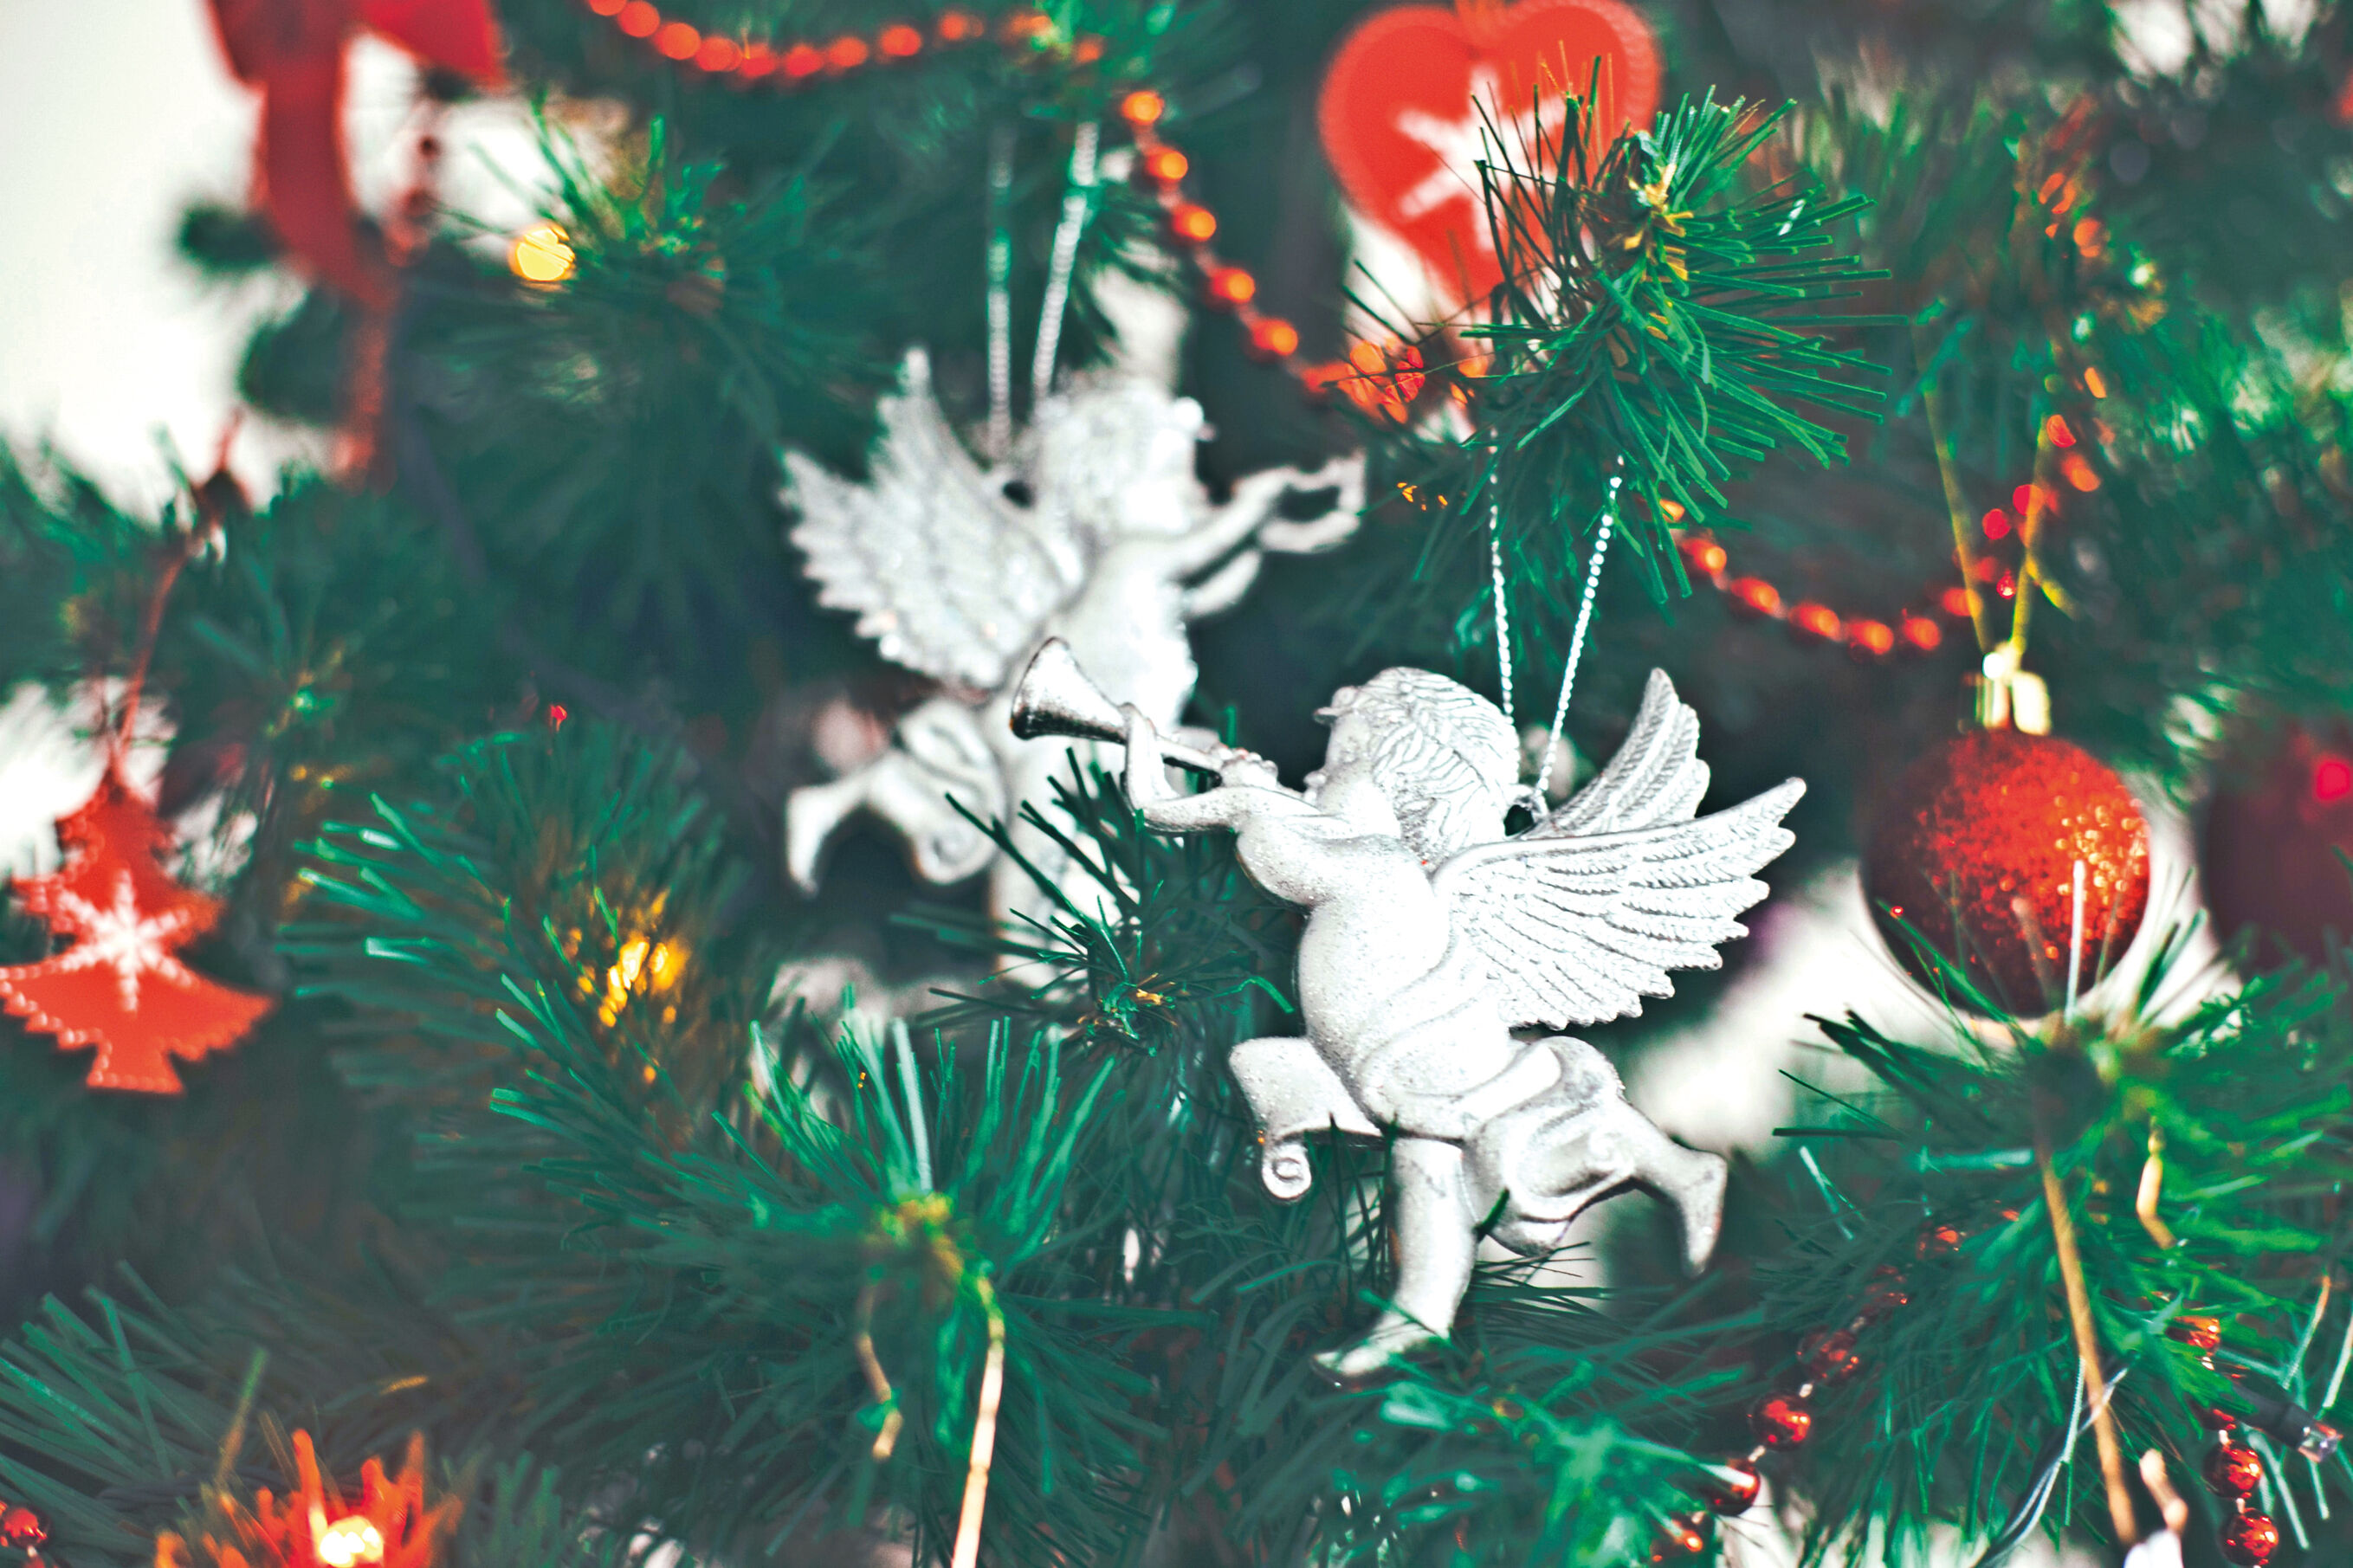 Decoratieve engeltjes bazuinen het uit in de kerstboom (© Eugene Zhyvchik op Unsplash)